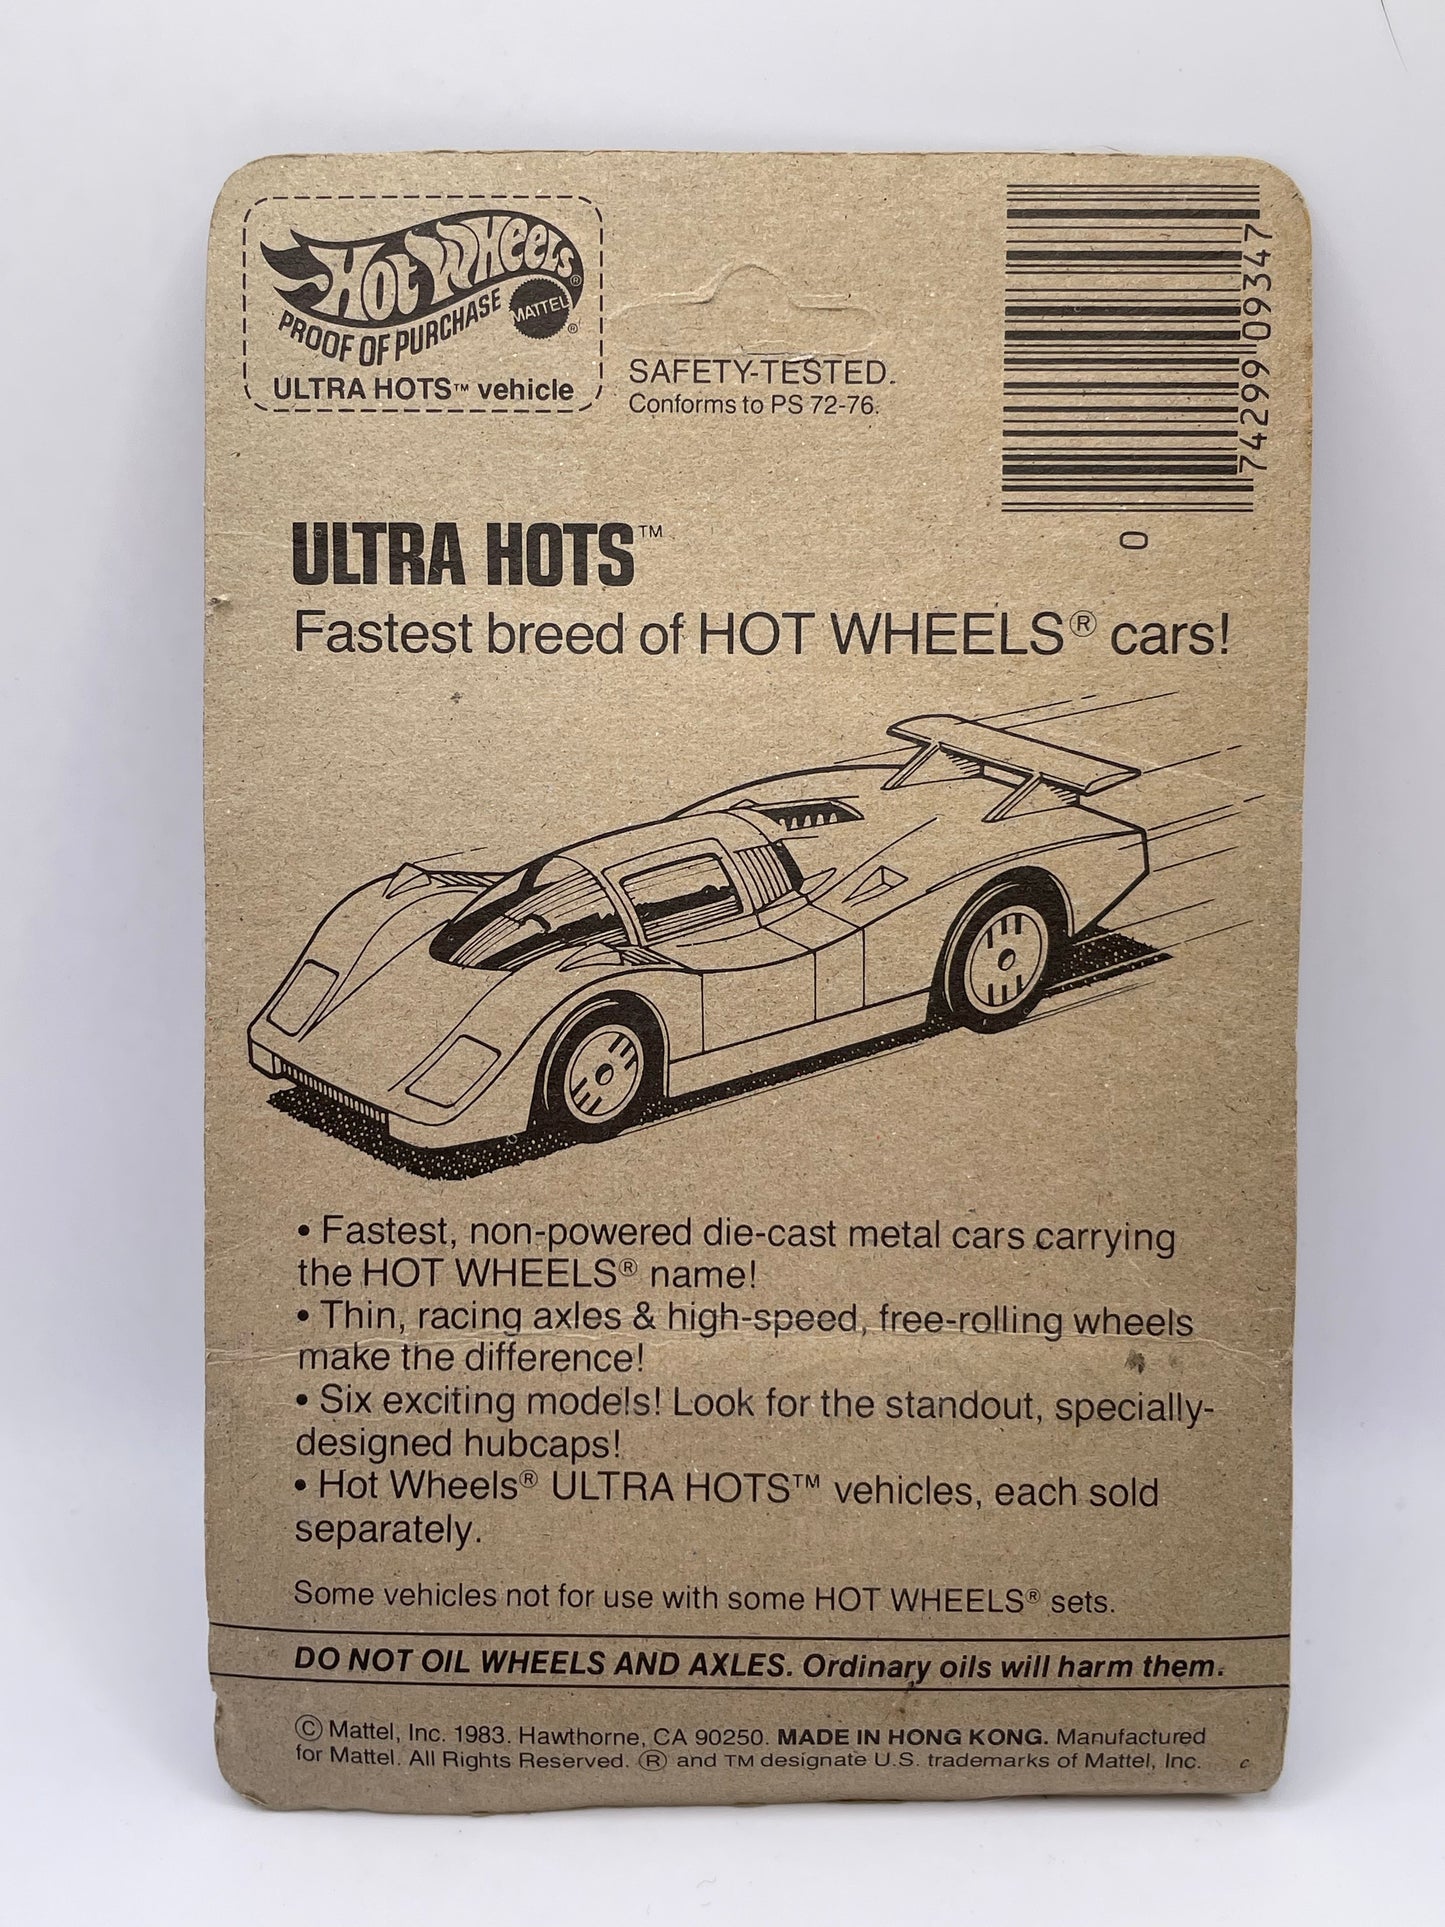 1983 Hot Wheels Ultra Hots Flame Runner MOC